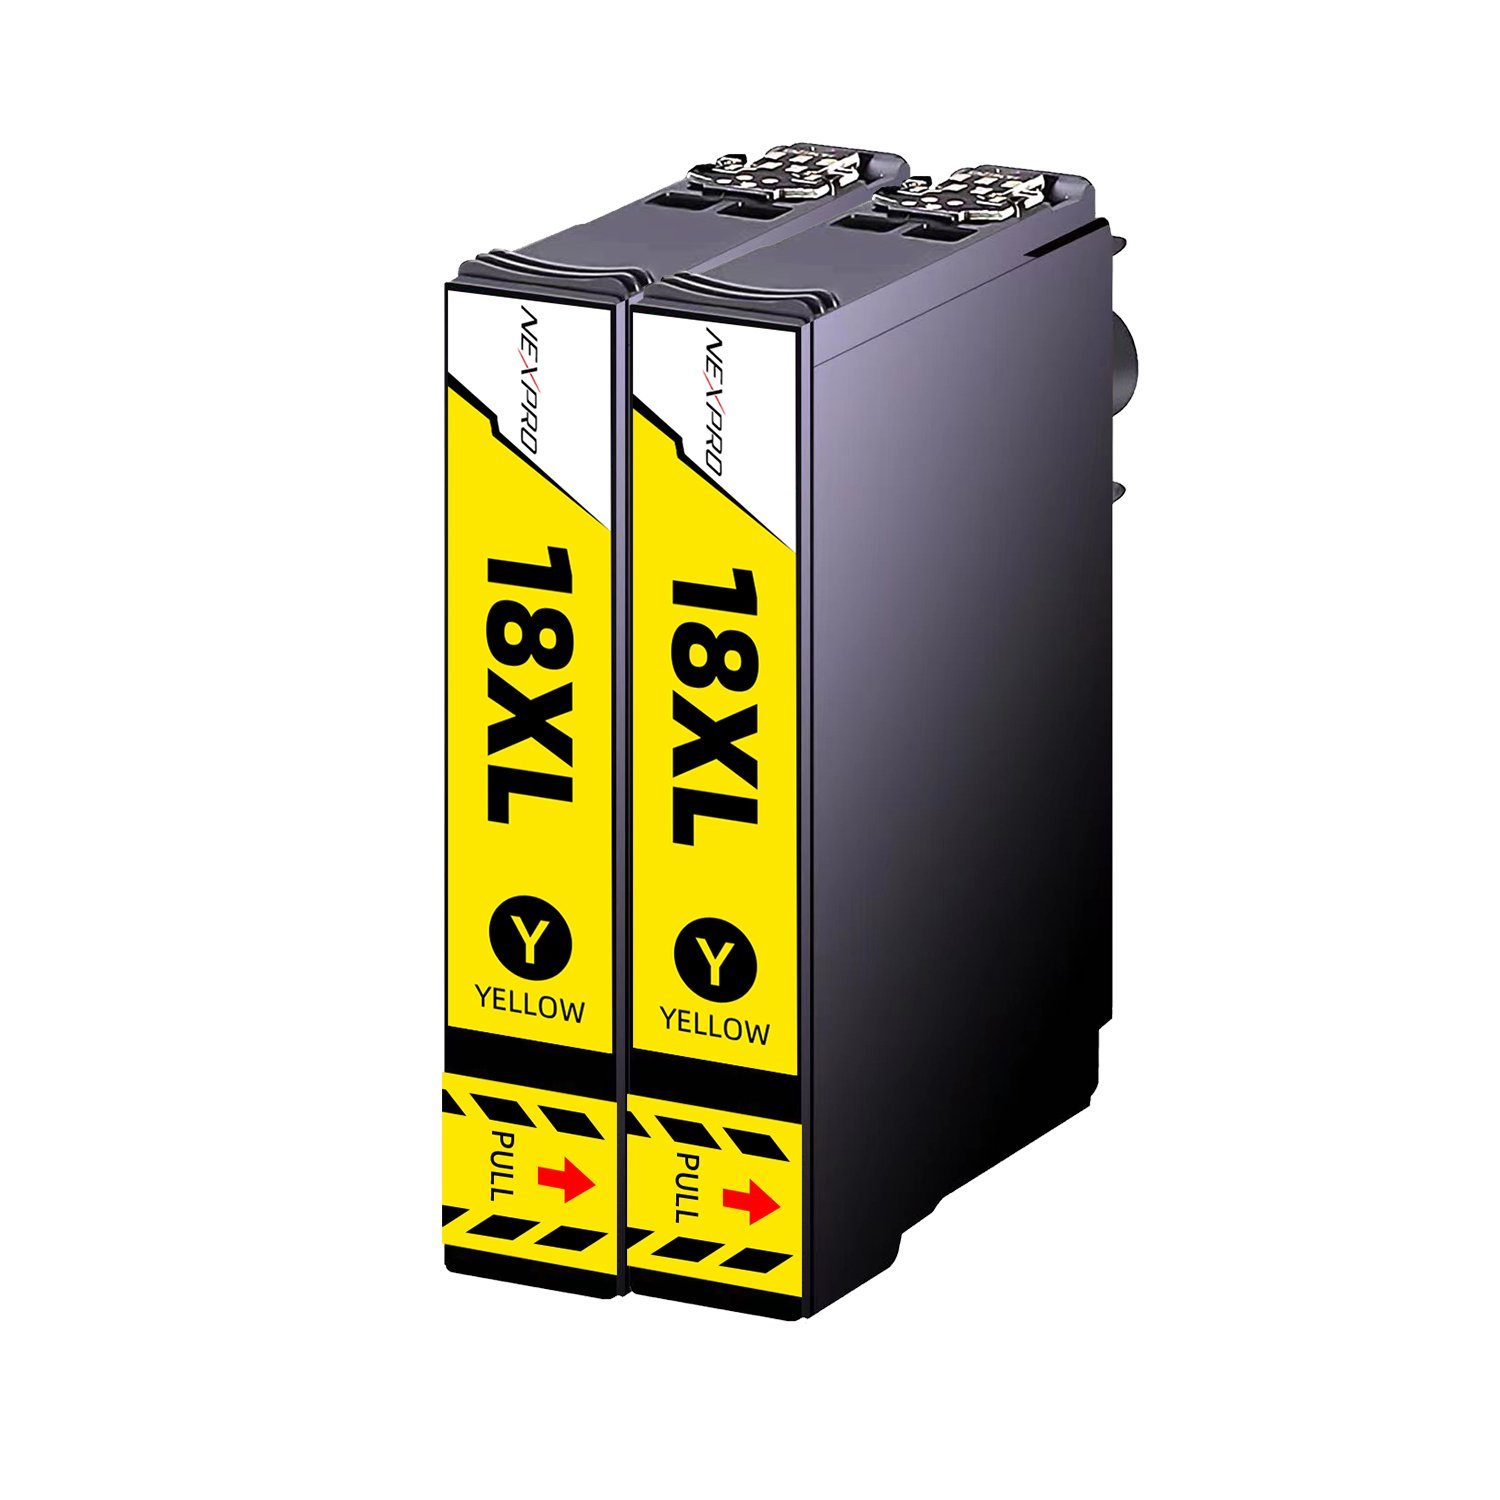 NEXPRO EPSON 18 XL Druckerpatronen für XP33 XP225 XP313 XP322 XP325, 2 Yellow Tintenpatrone (Packung, Epson 18XL C13T18164012 T1816 für Expression Home)